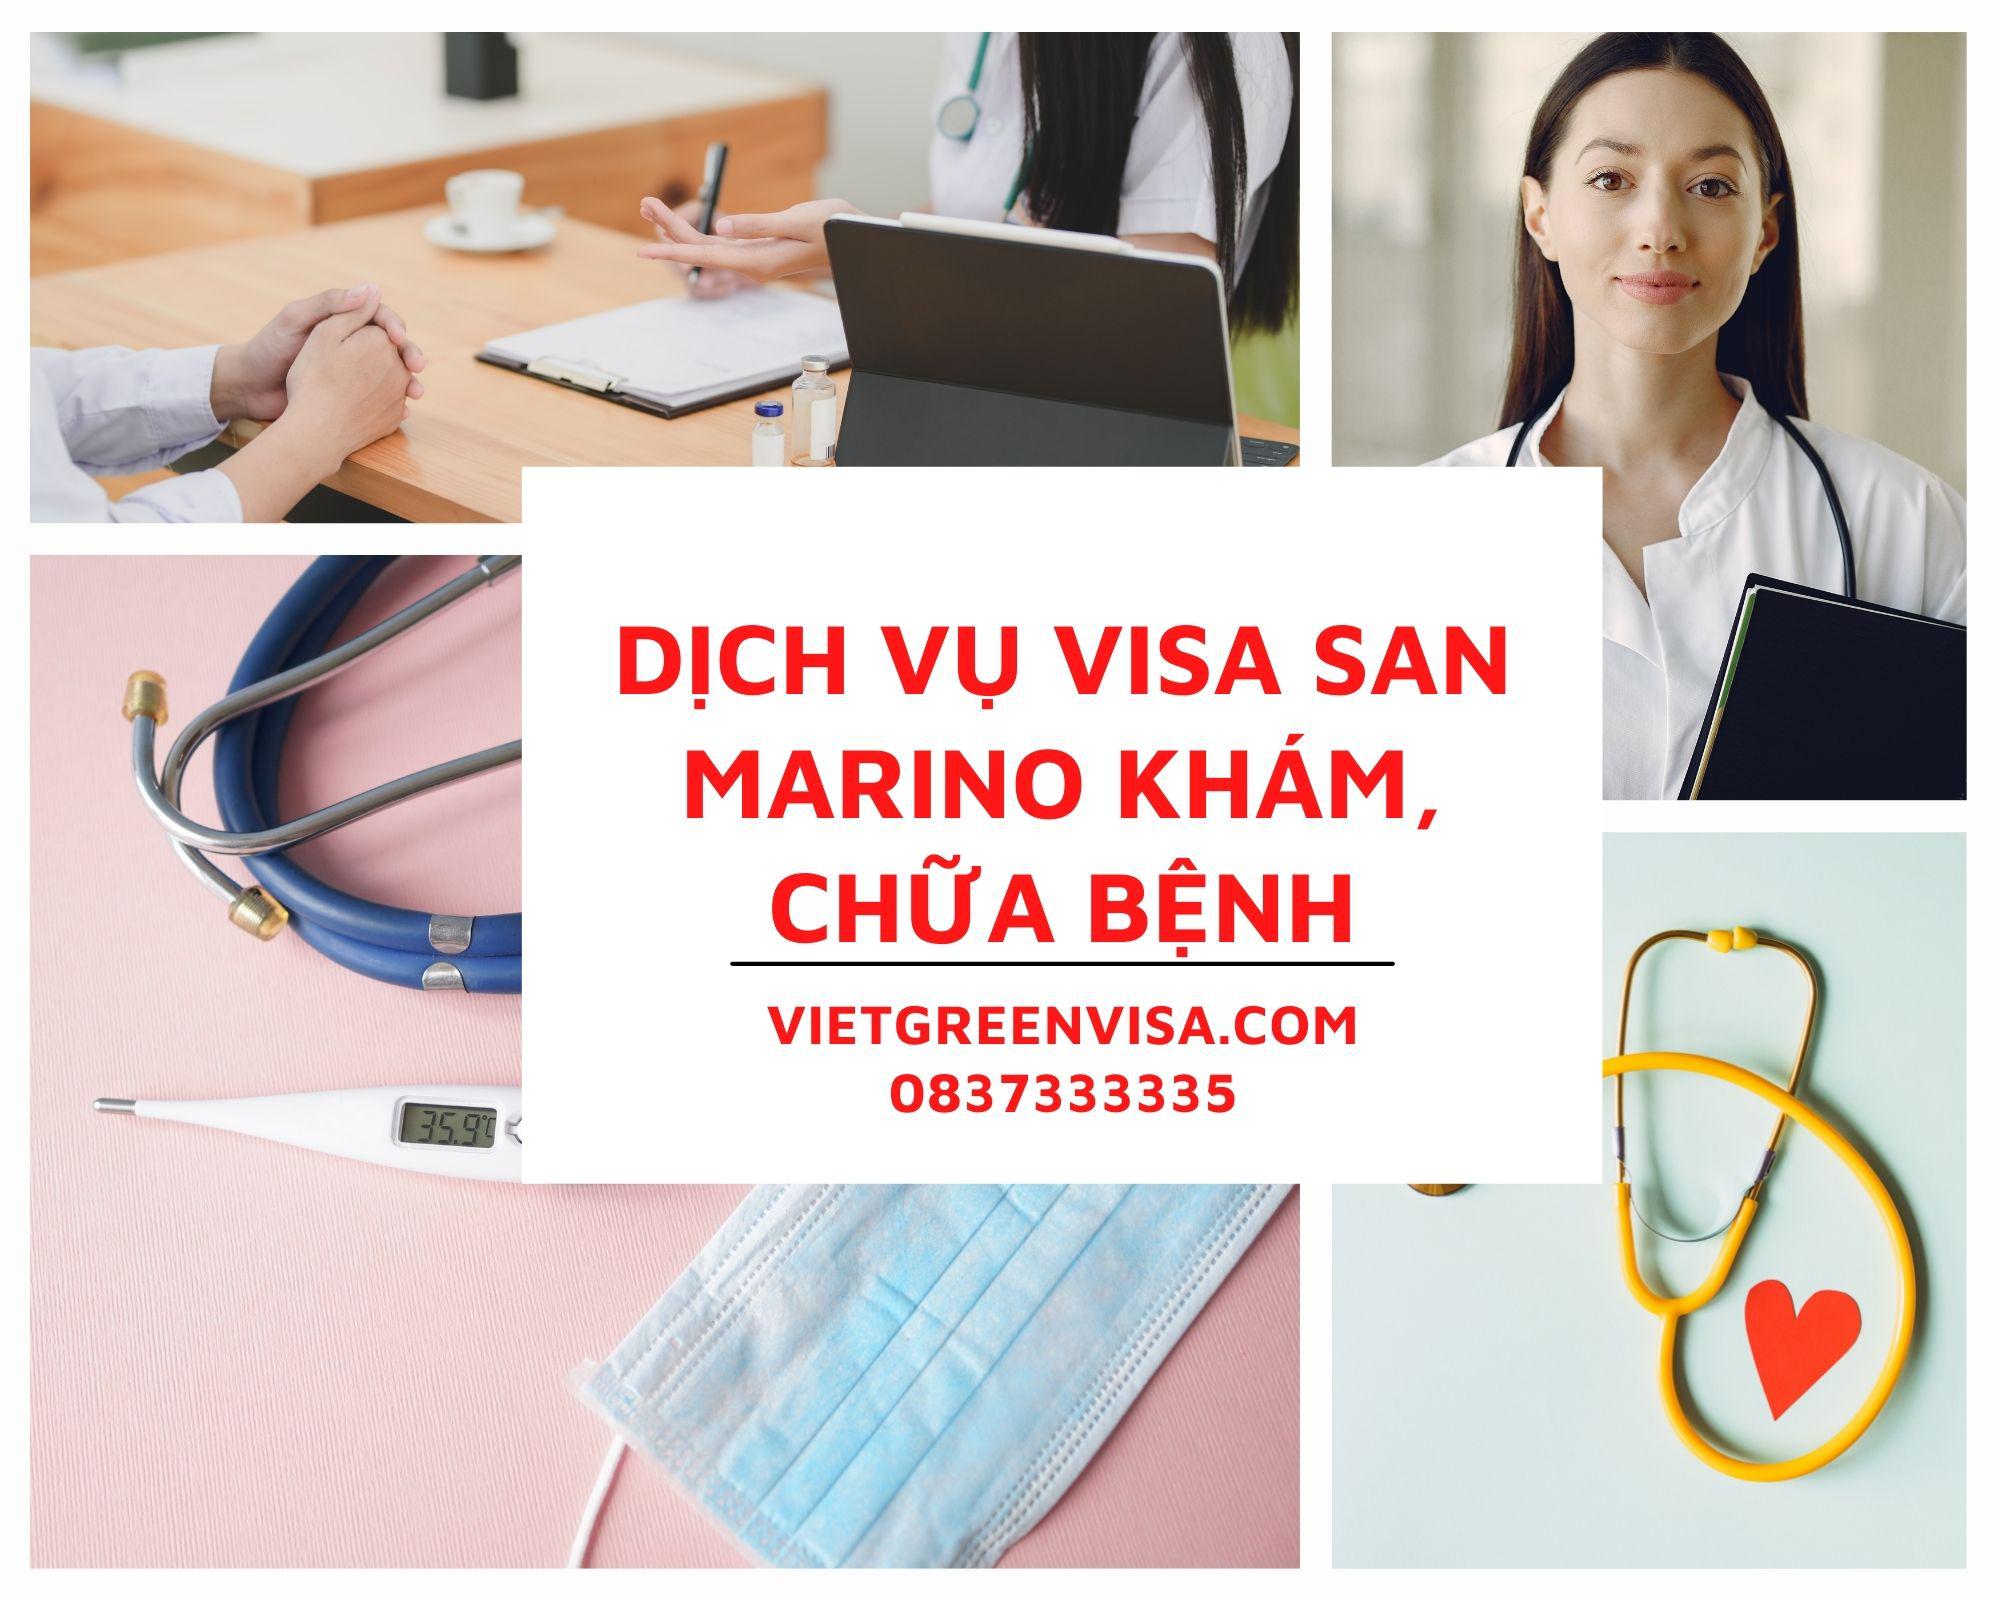 Tư vấn visa đi San Marino khám chữa bệnh nhanh chóng